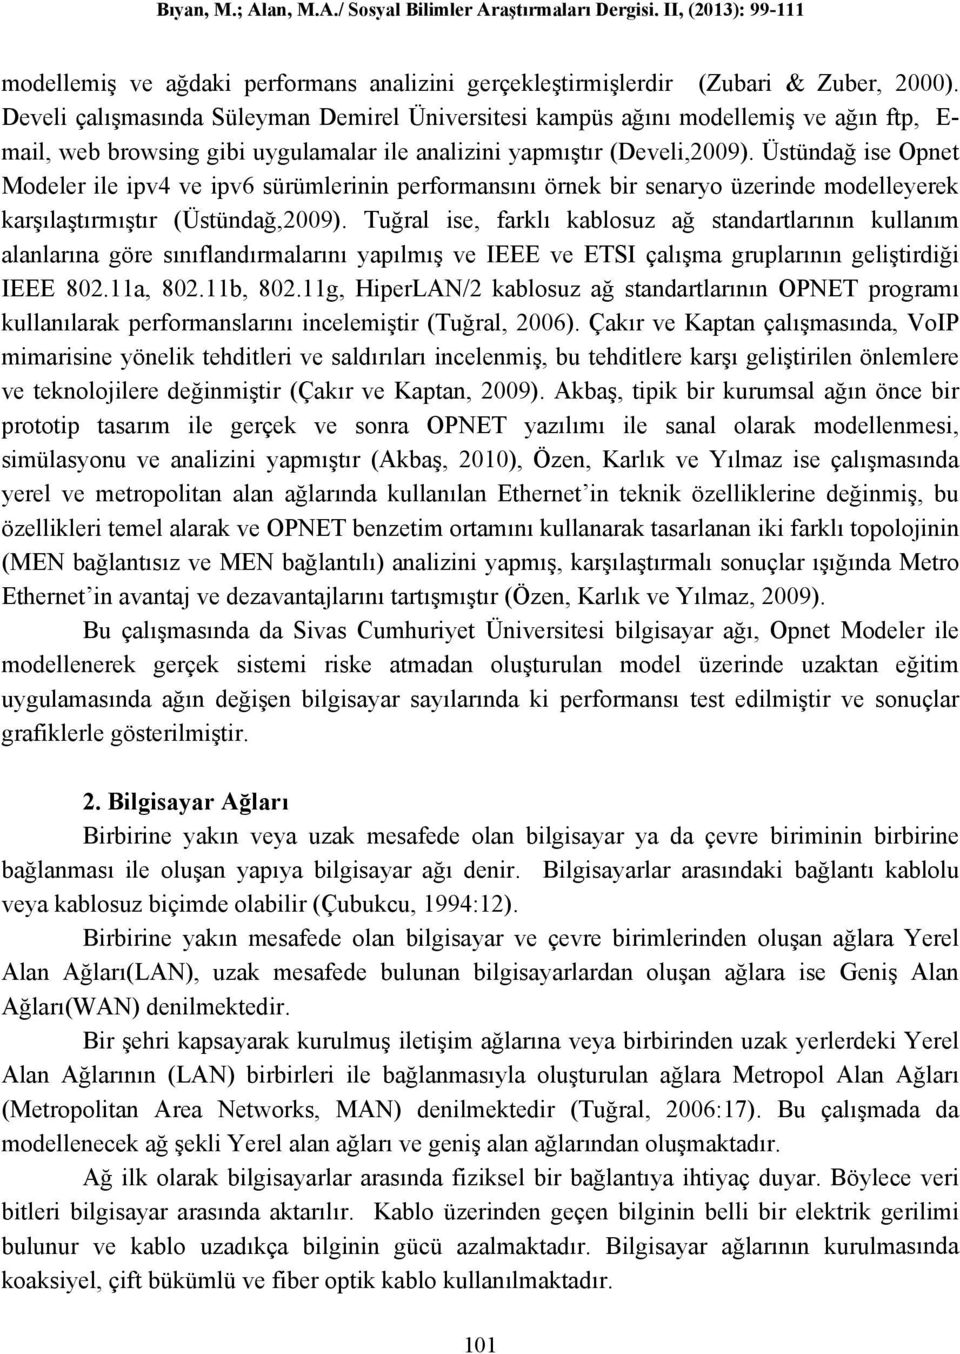 Üstündağ ise Opnet Modeler ile ipv4 ve ipv6 sürümlerinin performansını örnek bir senaryo üzerinde modelleyerek karşılaştırmıştır (Üstündağ,2009).